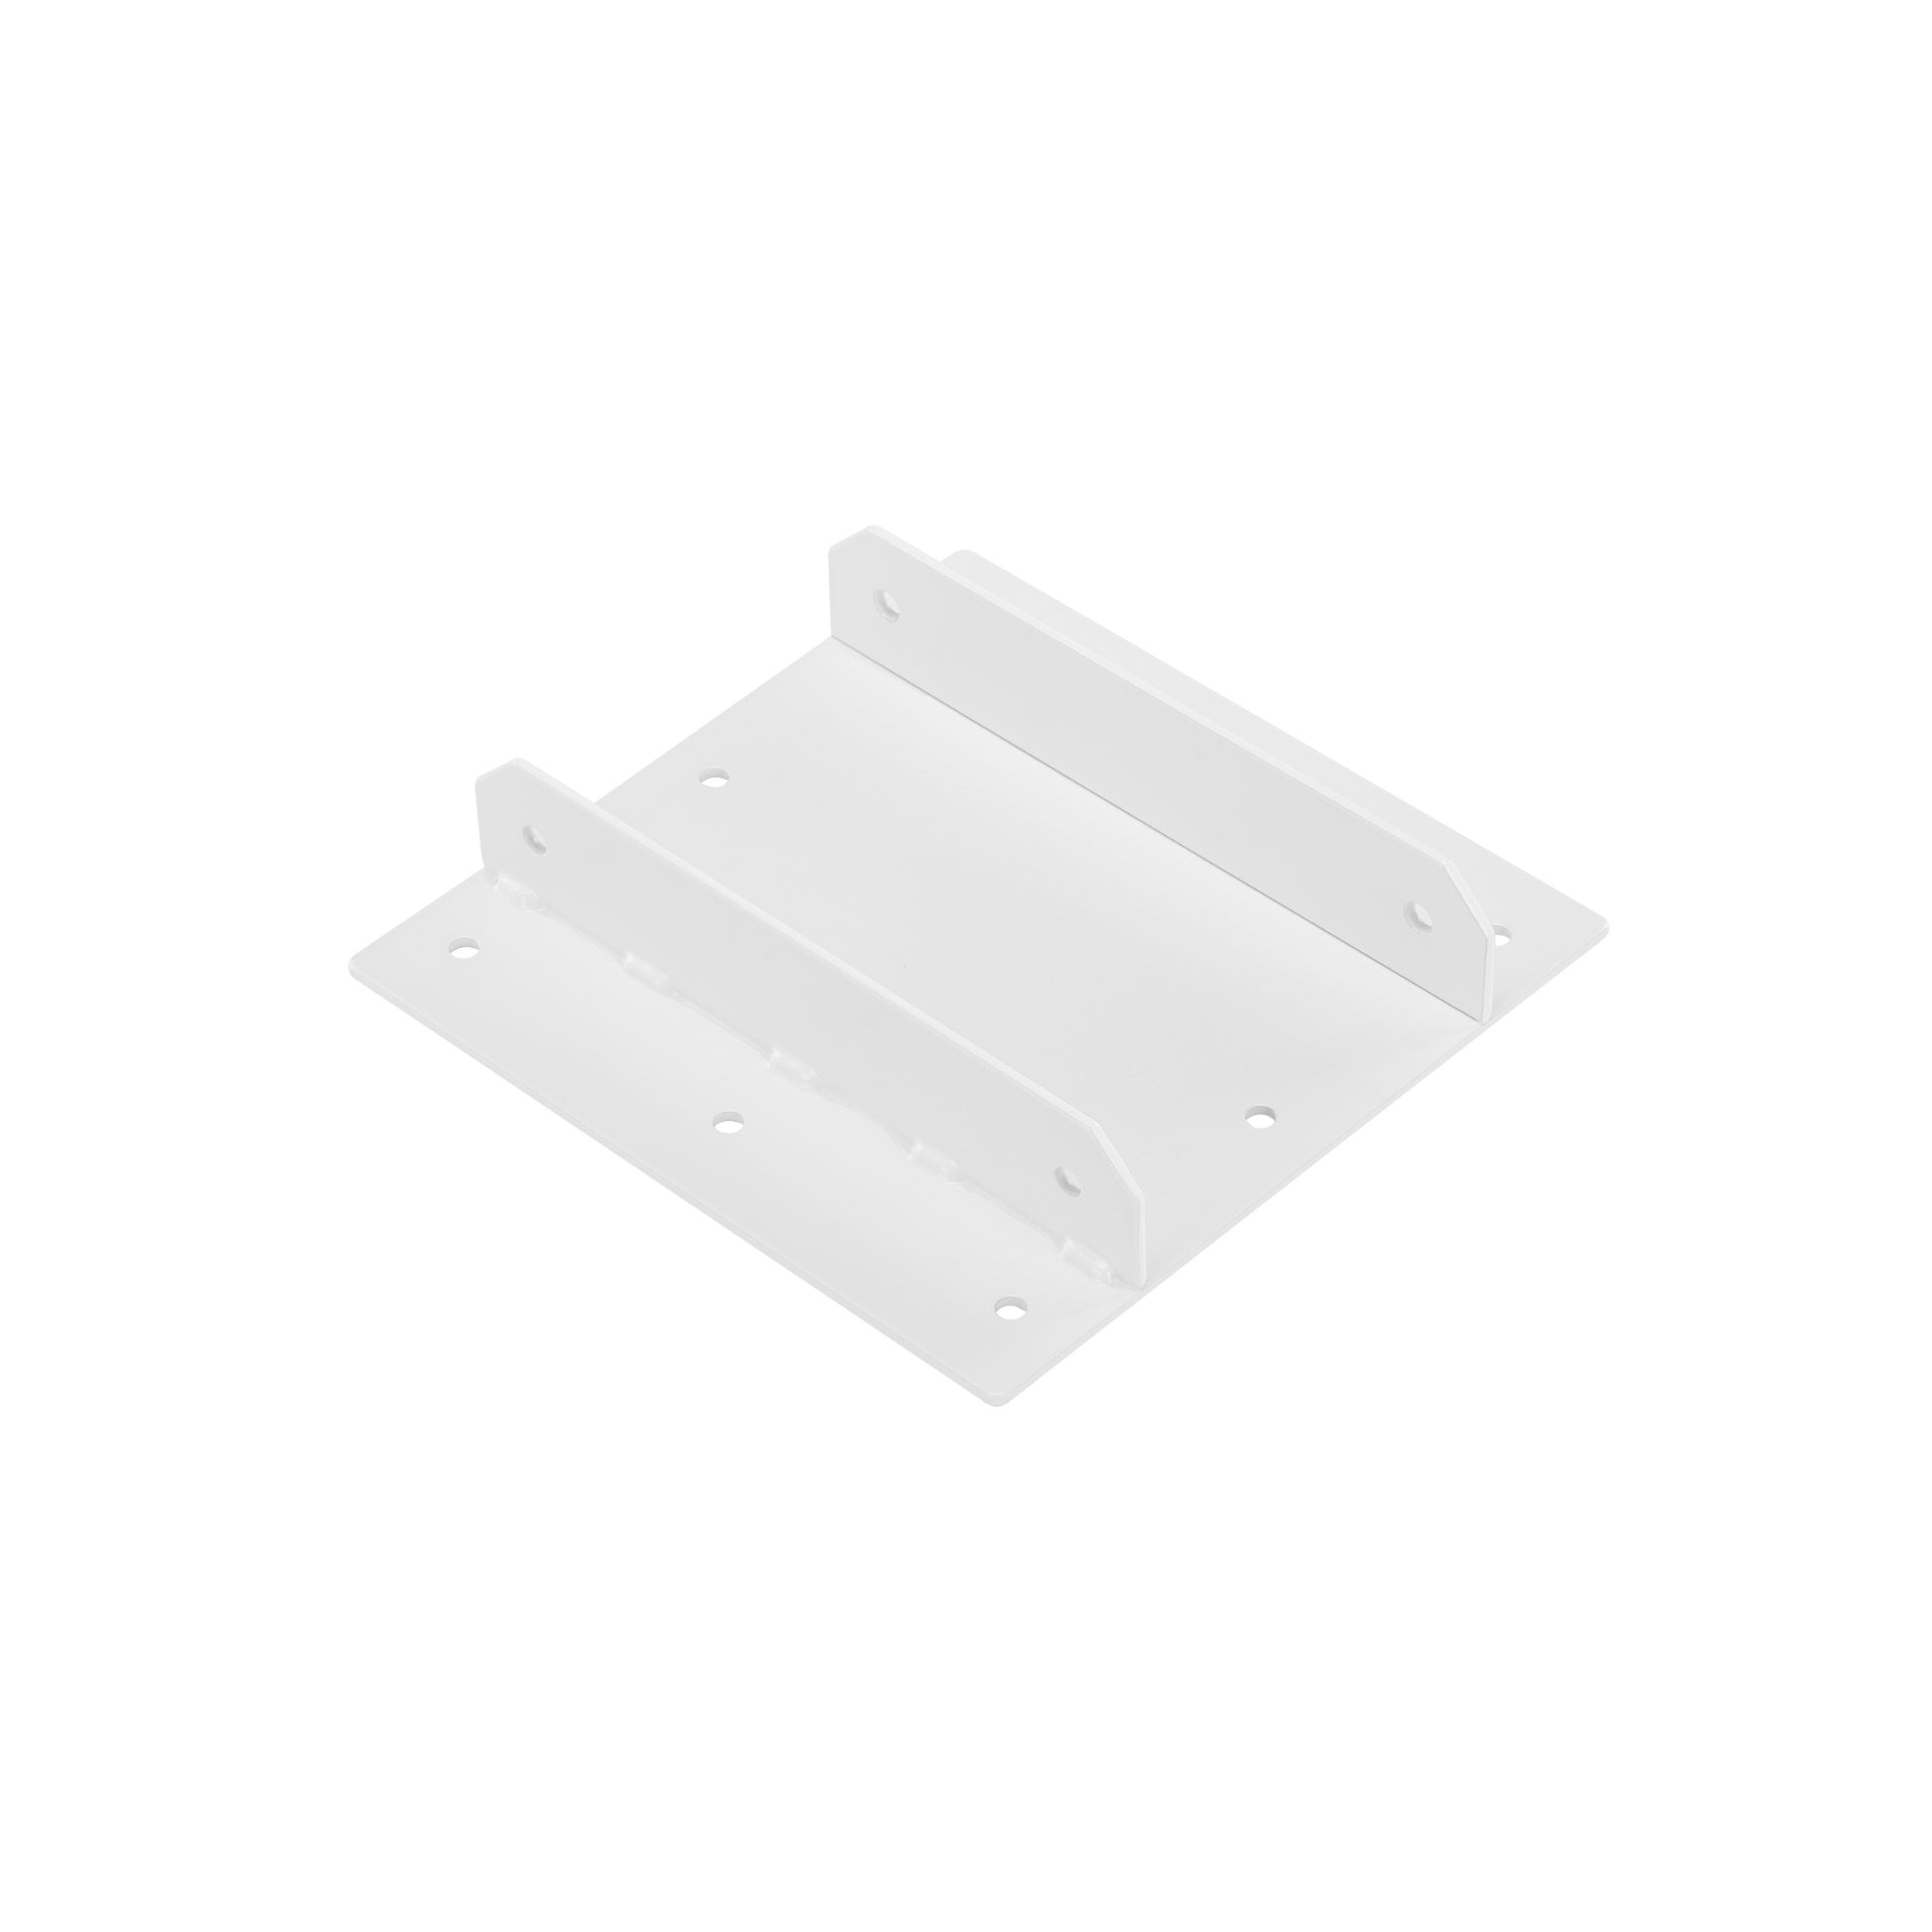 Bracket Kit for LG-02 White 2